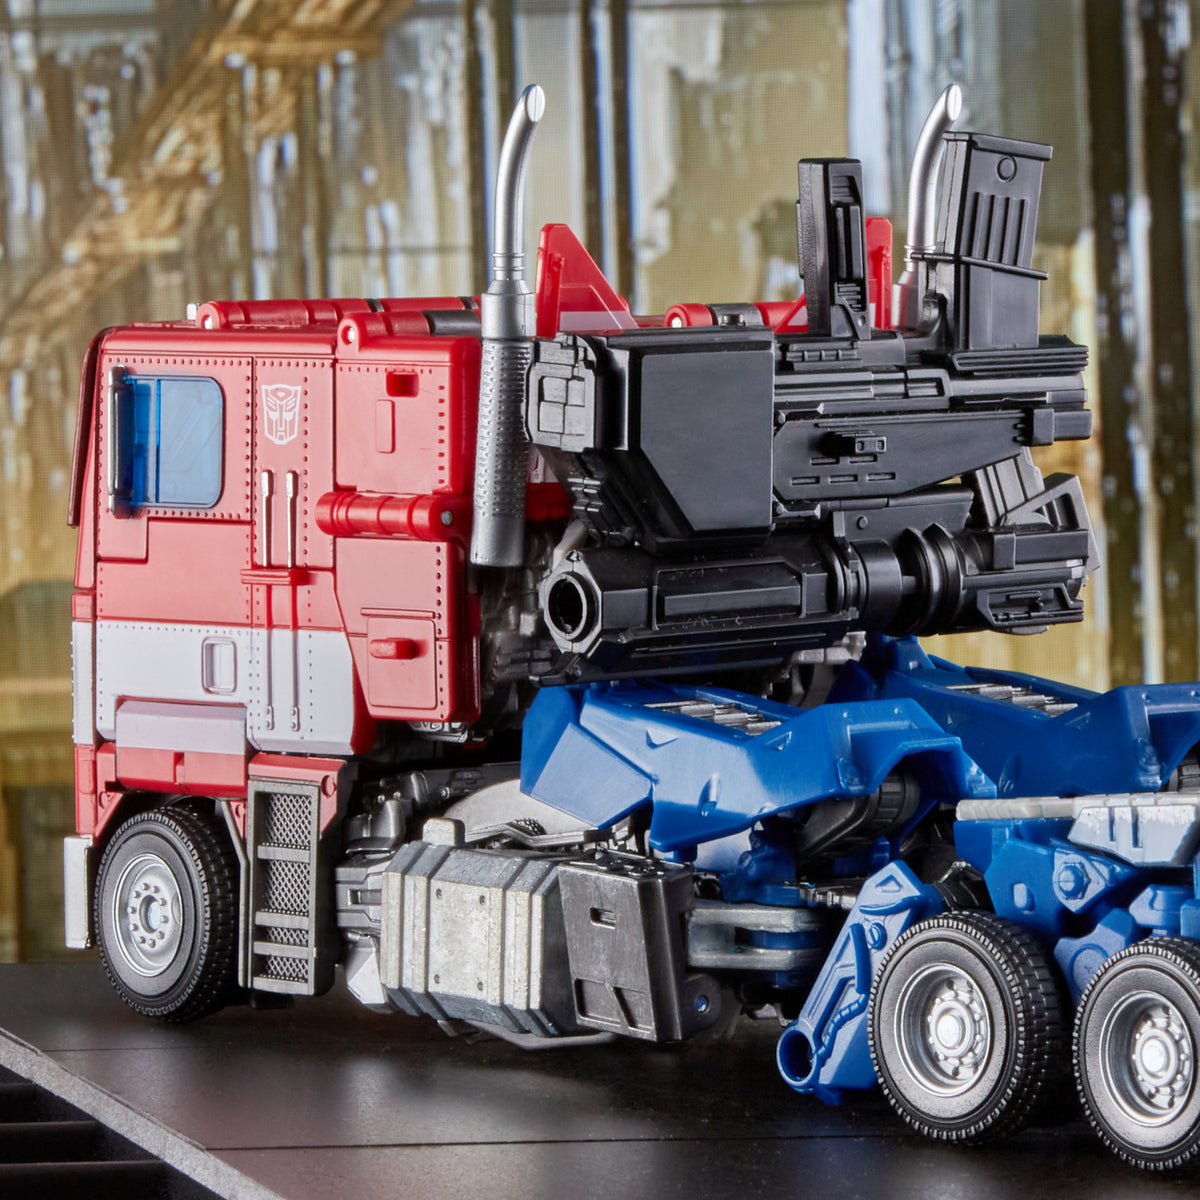 Pré-Commande Optimus Prime MPM-12 28cm Movie Masterpiece Series